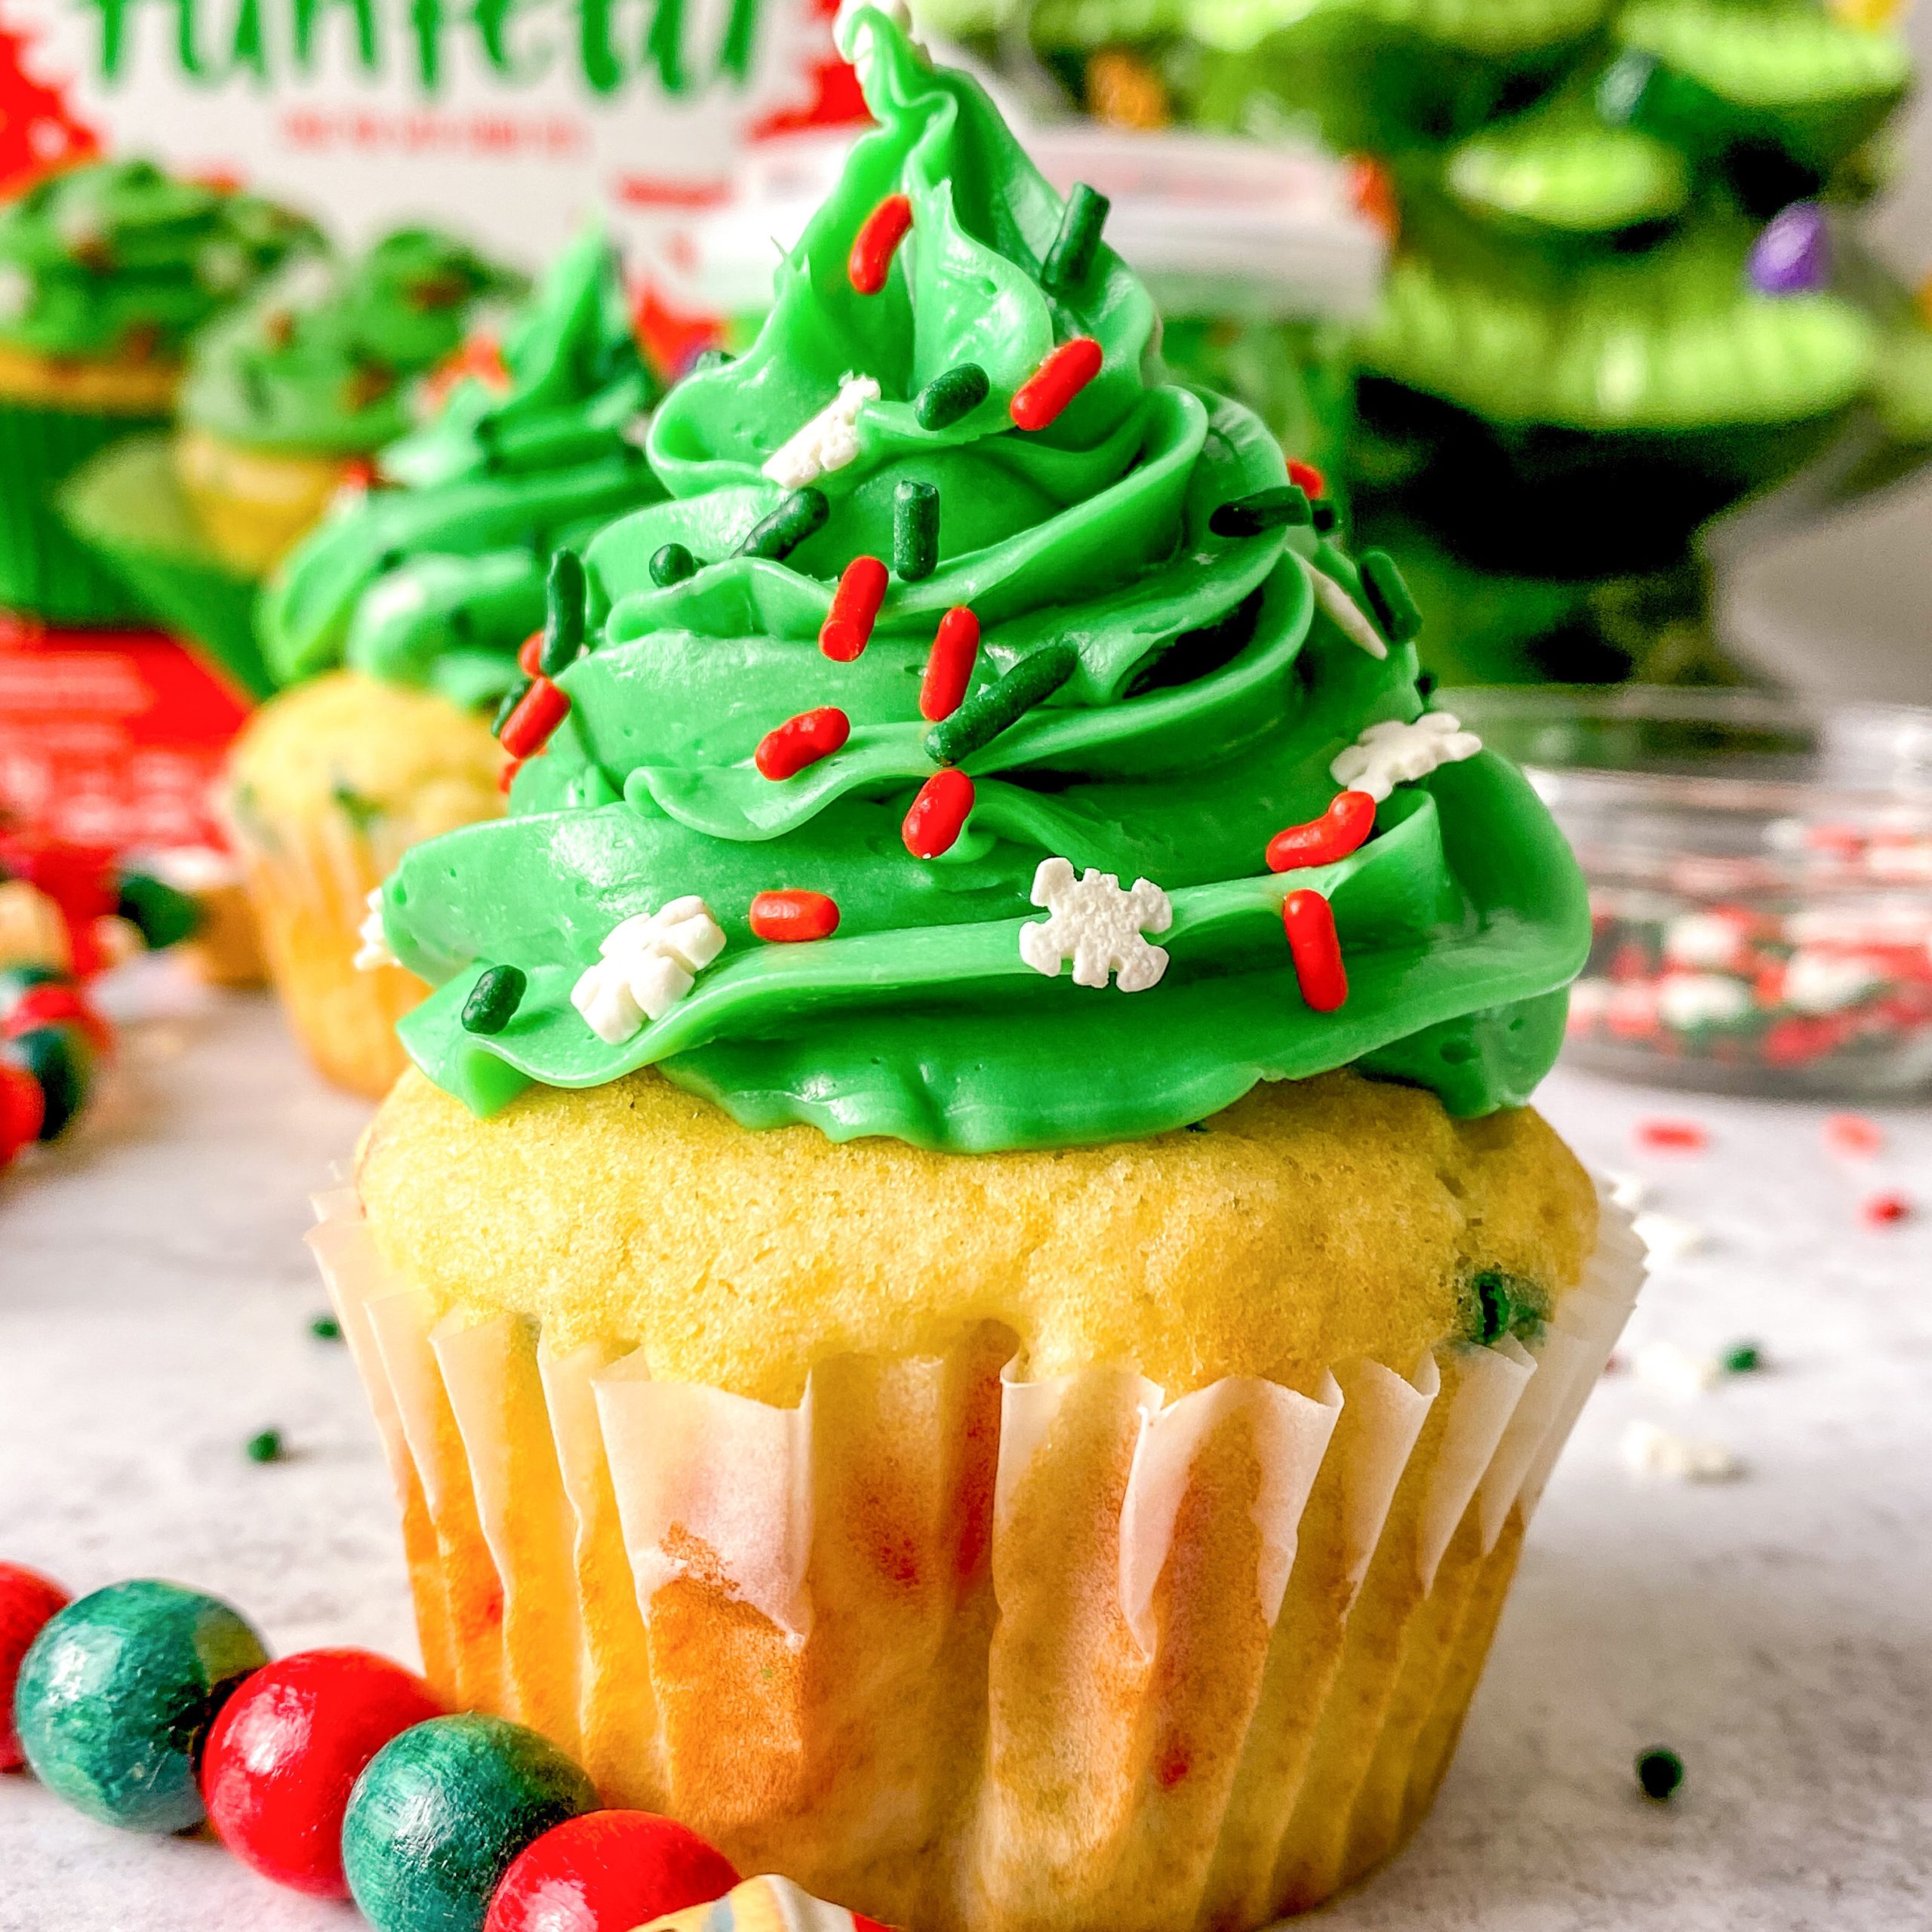 Christmas Tree Cupcakes Recipe